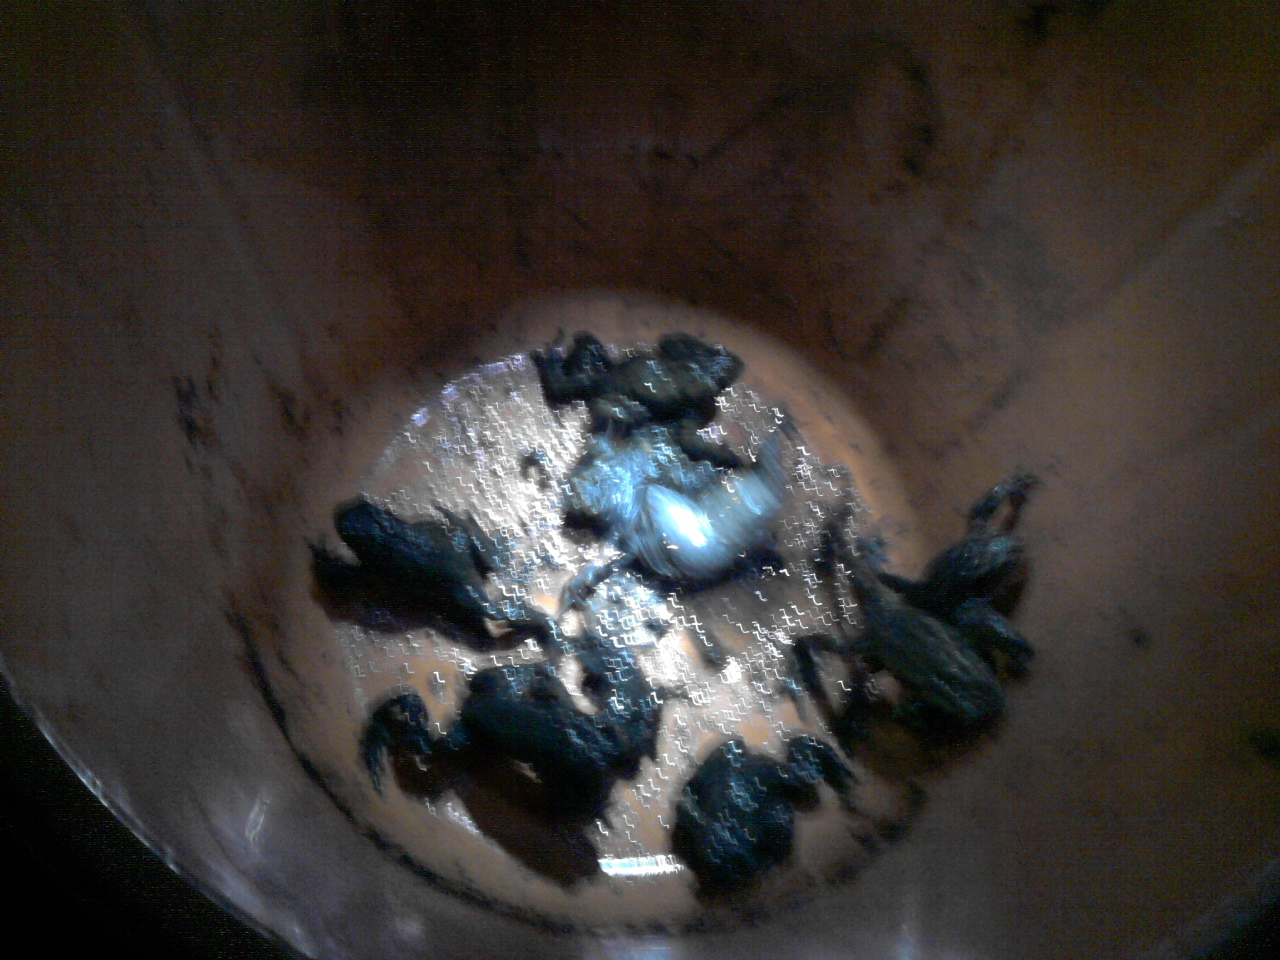 Llyffantod wedi eu hachub / Rescued Toads